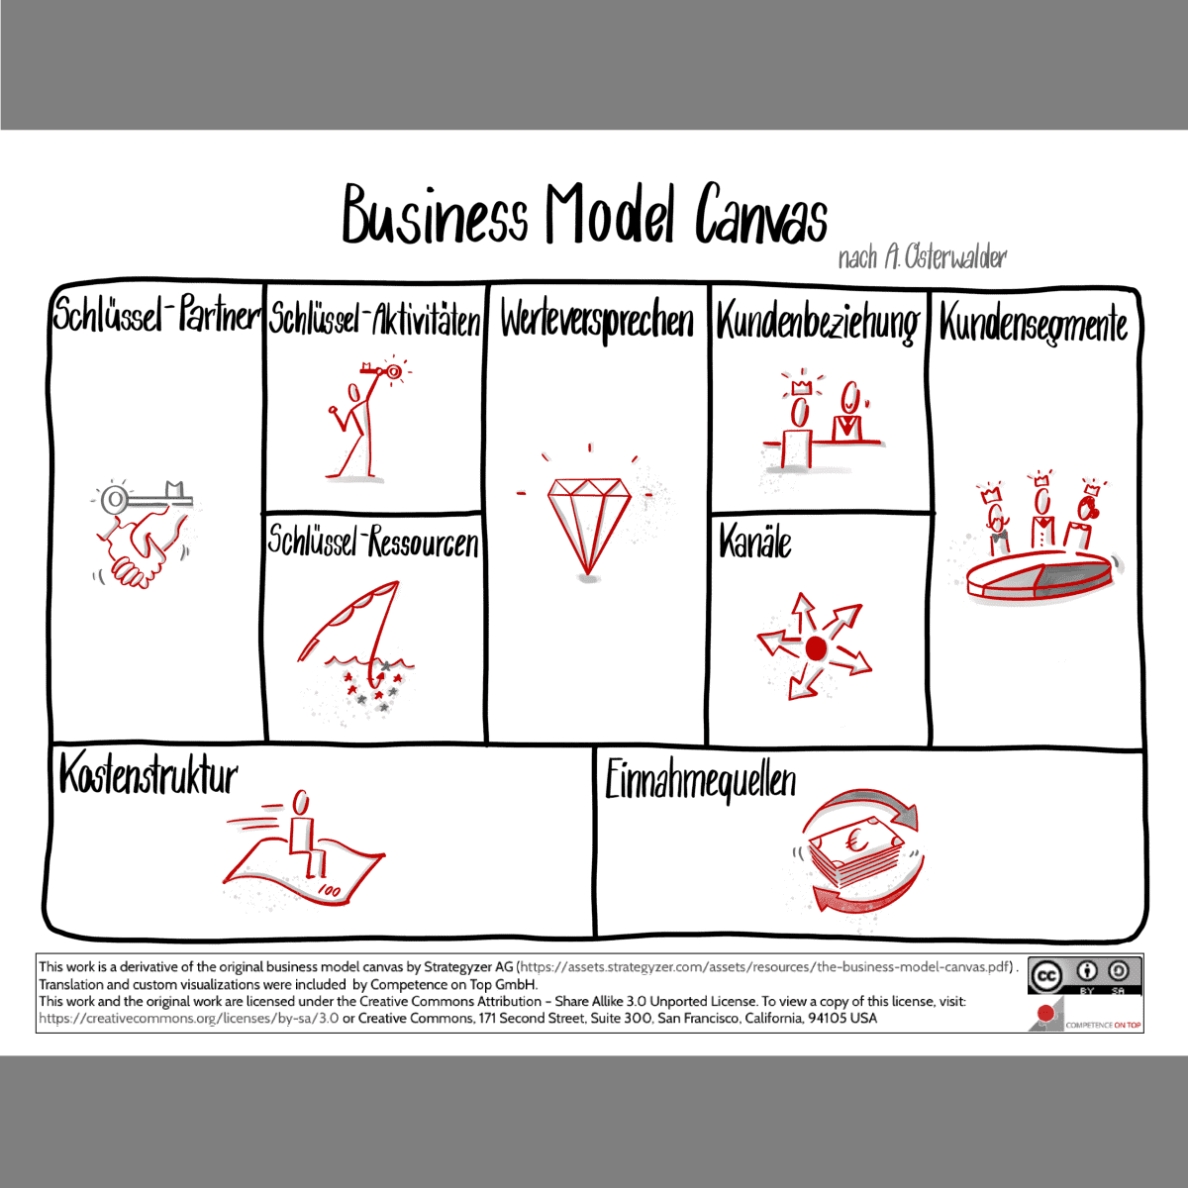 Business Model Canvas Nach Osterwalder - Bunisus regarding Osterwalder Business Model Template